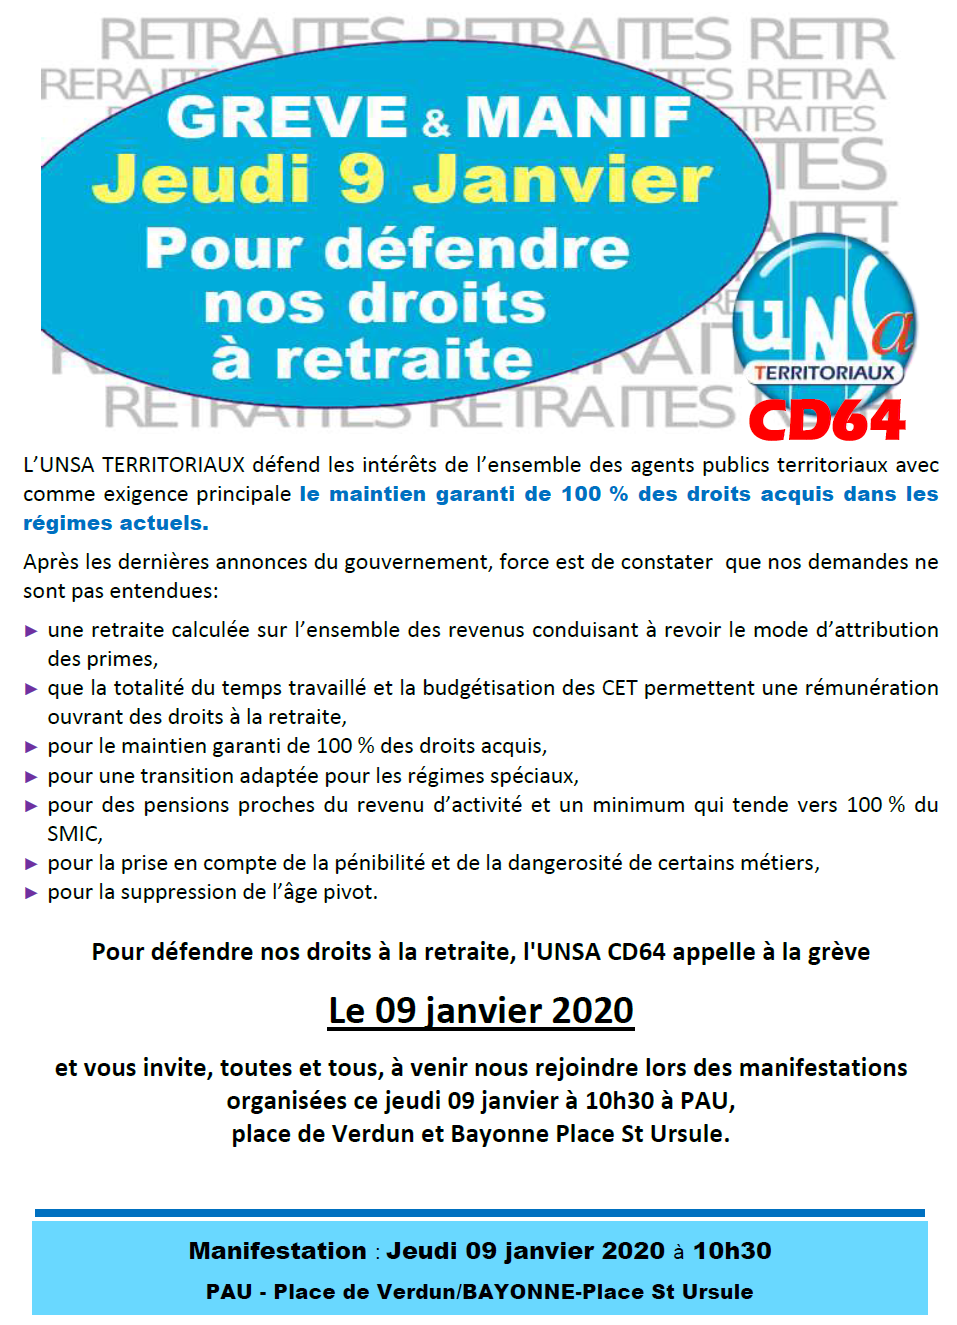 9 janvier 2020 : Grève et Manifestations avec l’UNSA CD64